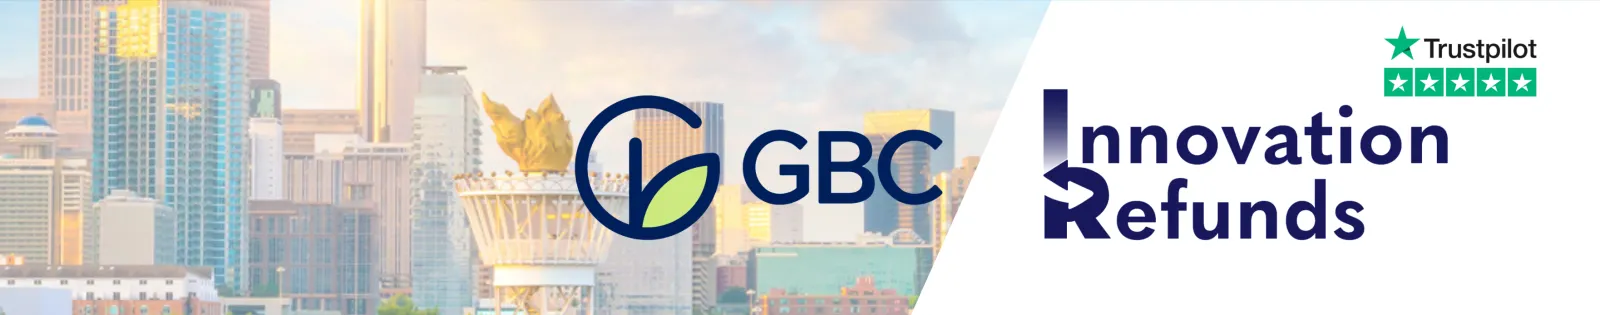 GBC Innovation Refunds